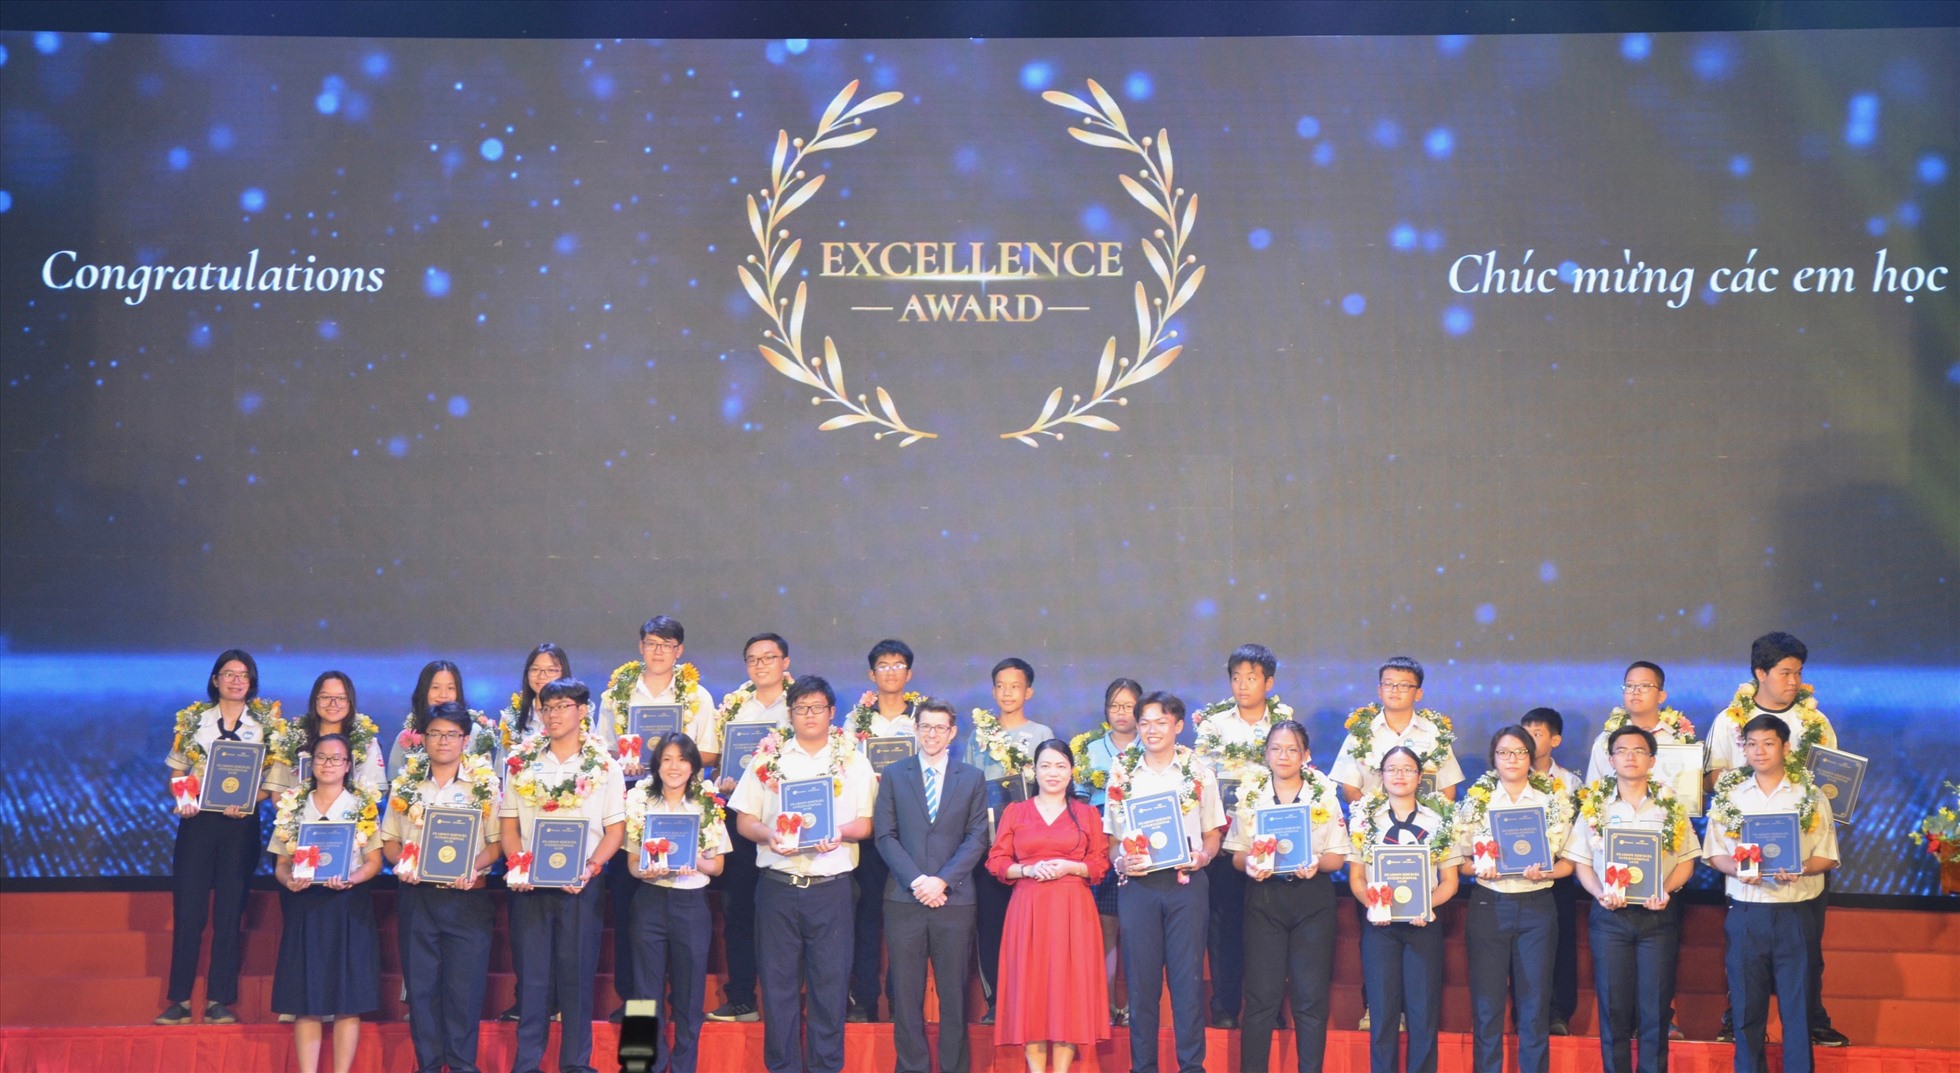 28 học sinh đạt danh hiệu Excellence Award - đạt mức điểm xuất sắc cho cả 3 môn Toán, Tiếng Anh và Khoa học. Ảnh: Huyên Nguyễn